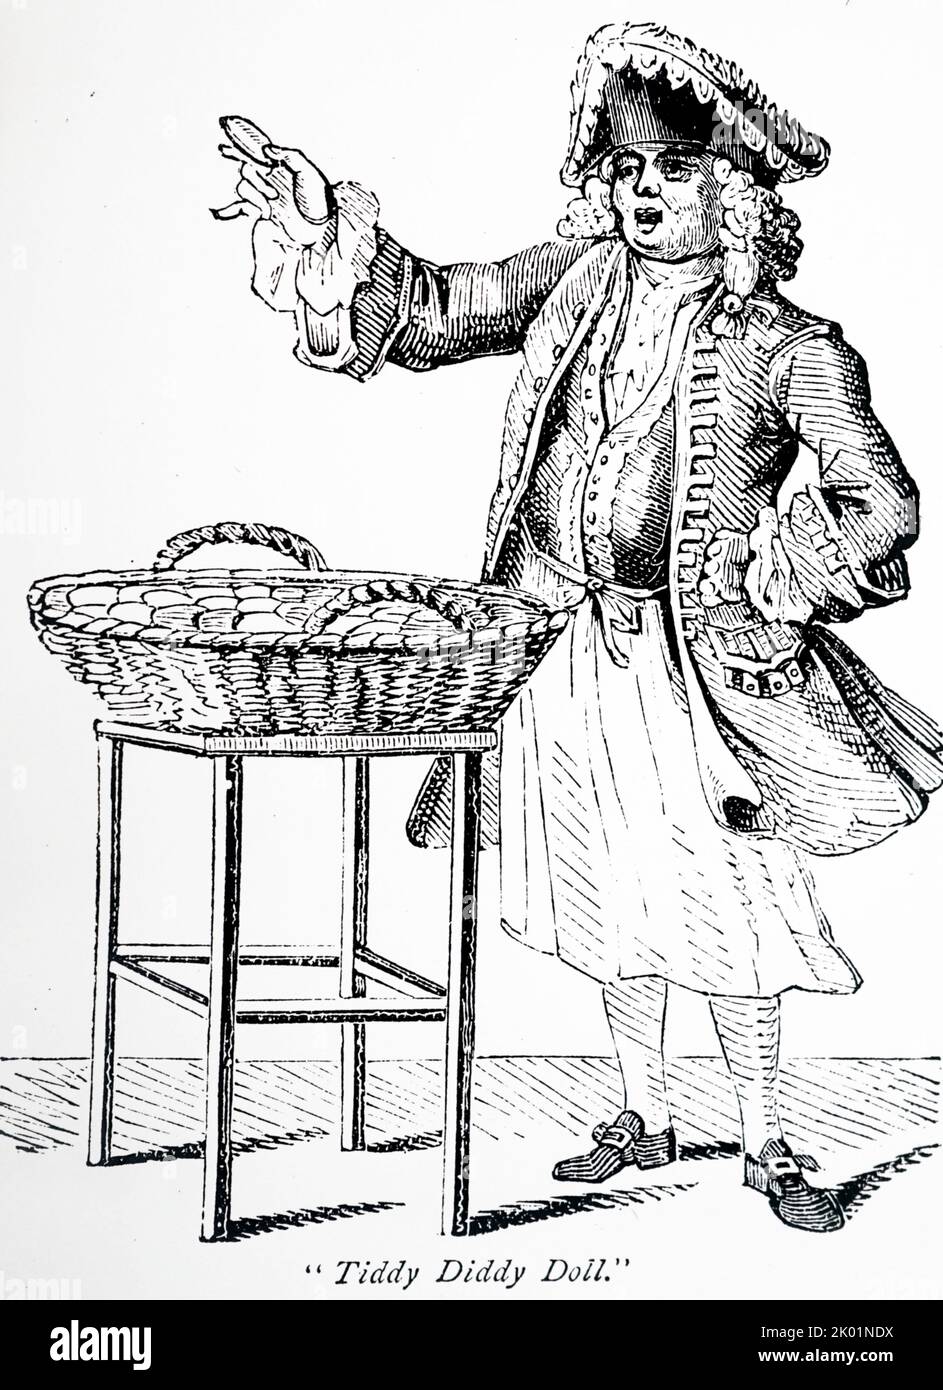 Tiddy Diddy Doll, célèbre vendeur de pain d'épice datant du 18th siècle. Banque D'Images